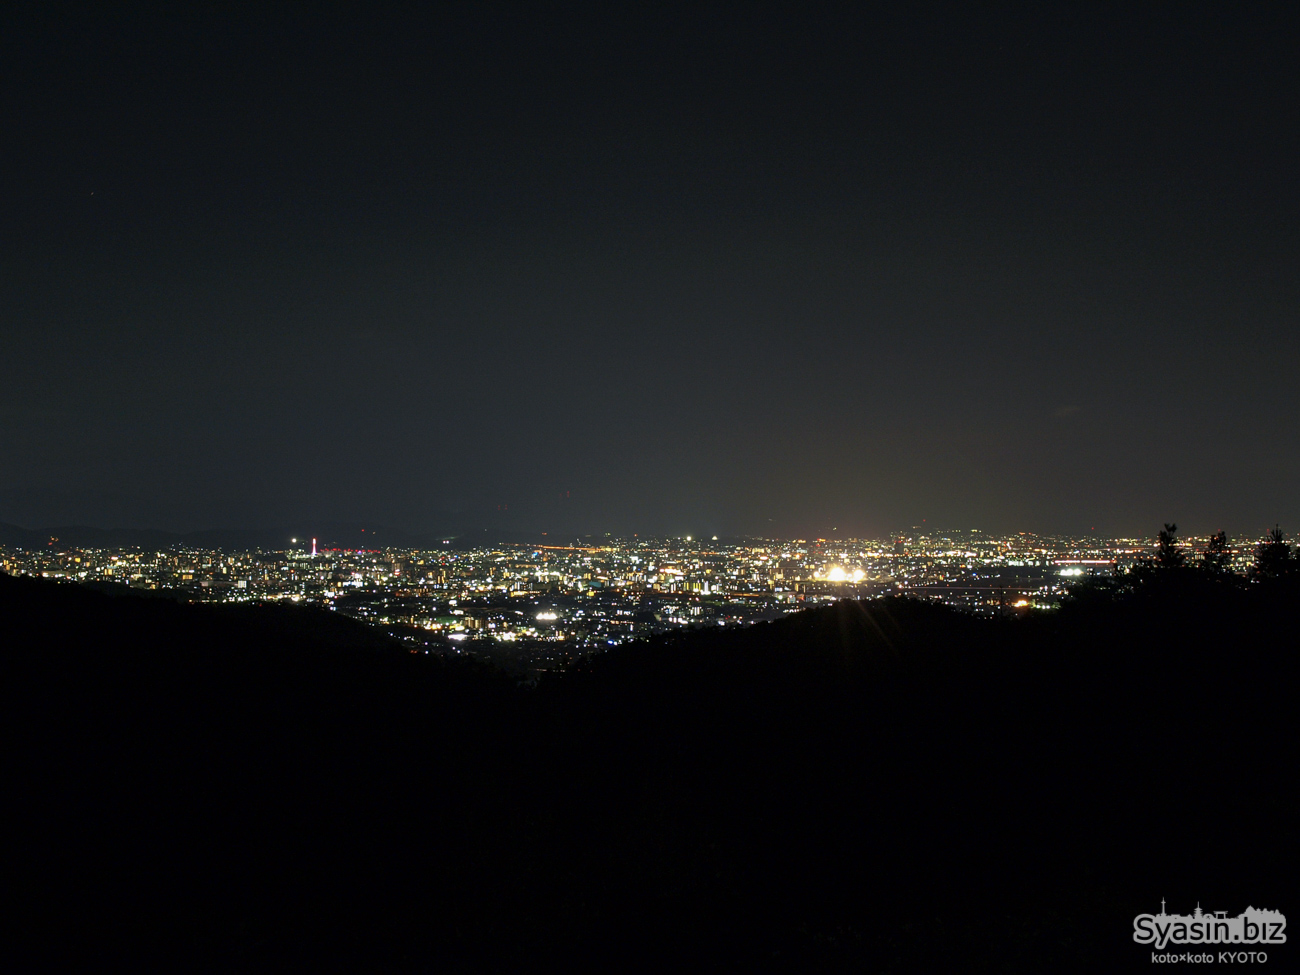 菖蒲ヶ丘展望台 – 嵐山高雄パークウェイの夜景